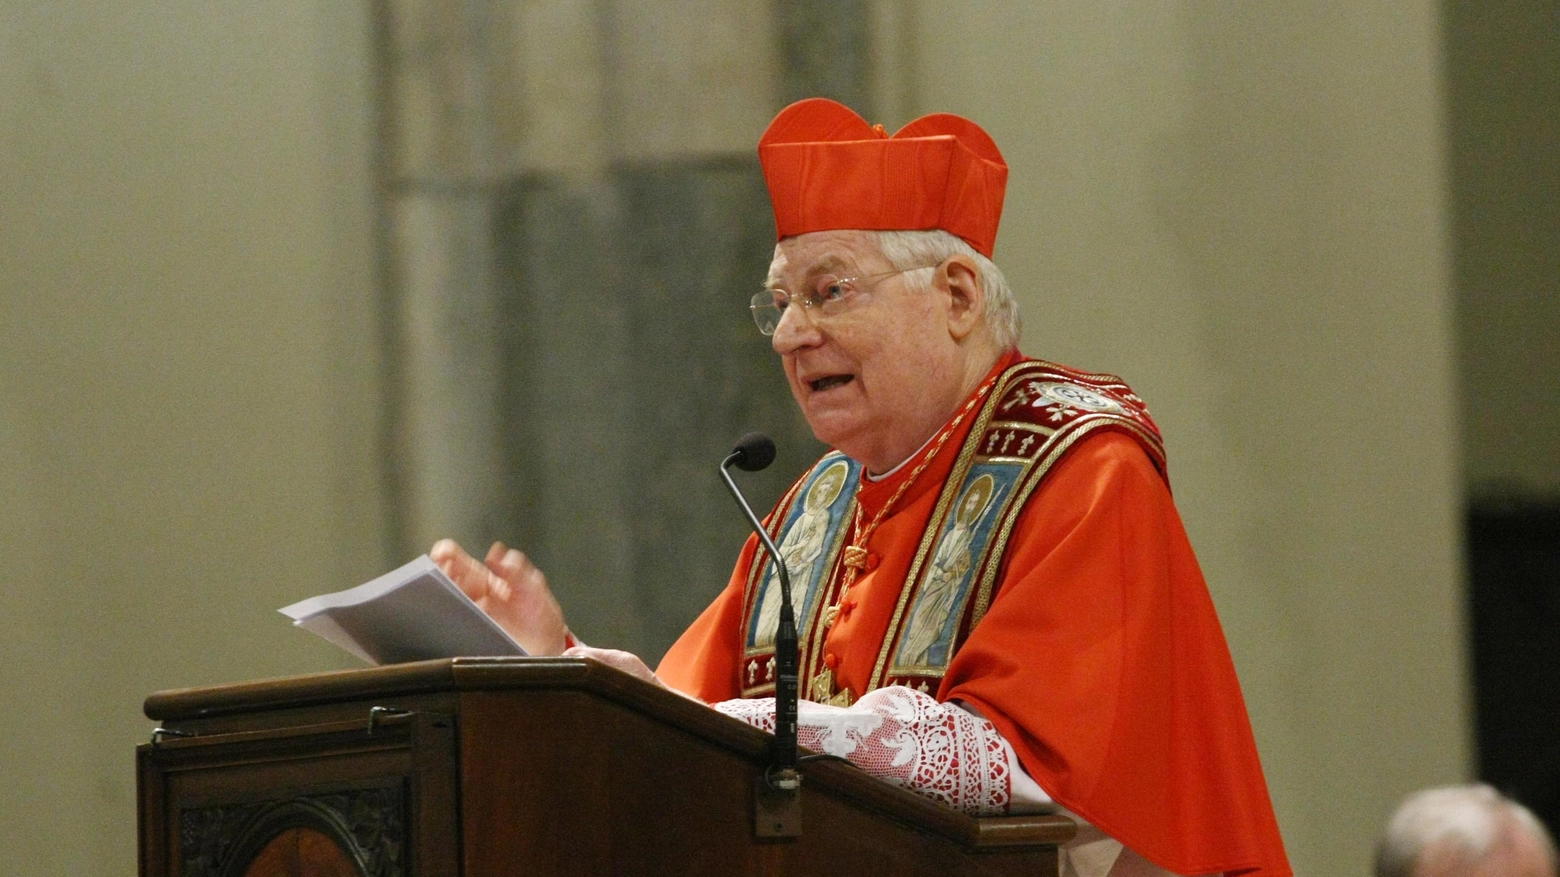 Sant'Ambrogio, discorso alla città di Milano del cardinale Angelo scola